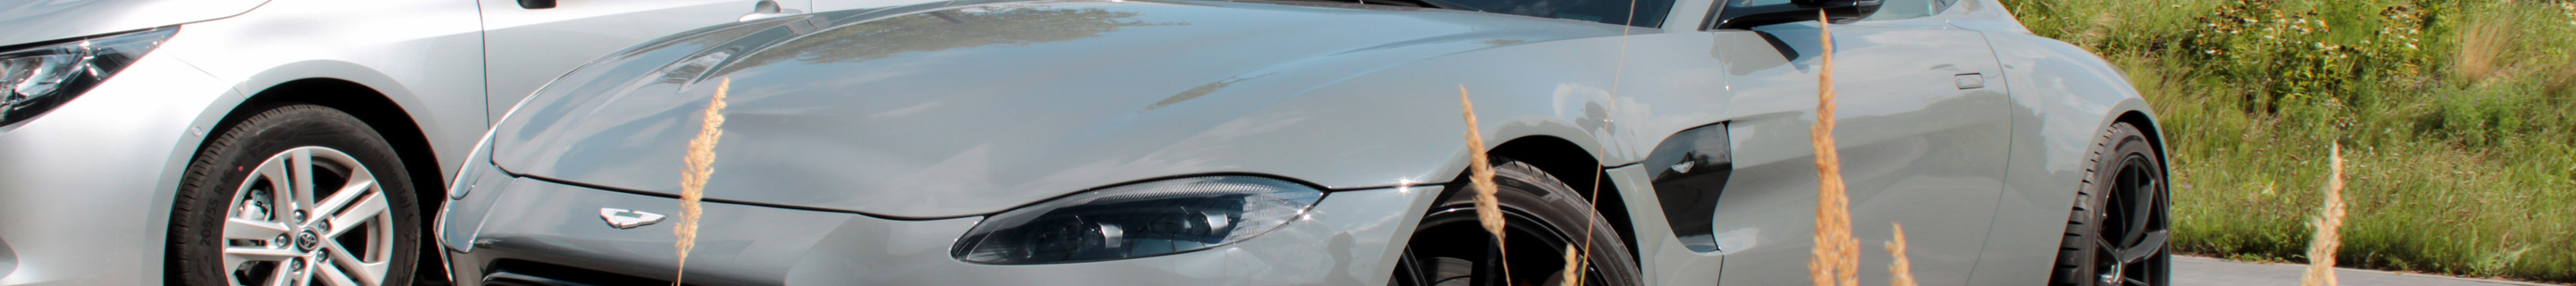 Aston Martin V8 Vantage 2021 007 Edition